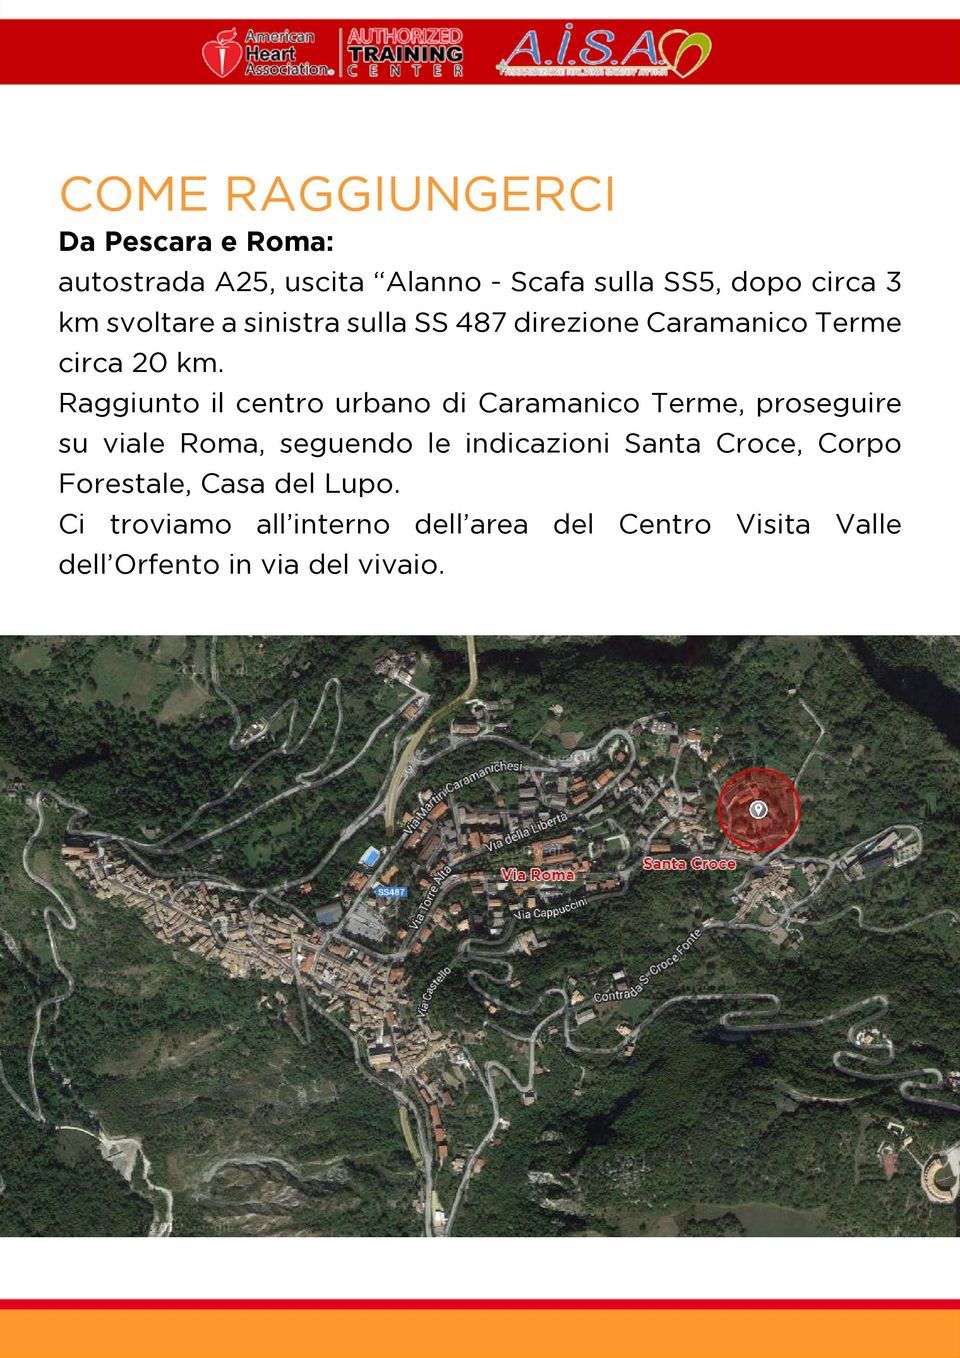 Raggiunto il centro urbano di Caramanico Terme, proseguire su viale Roma, seguendo le indicazioni